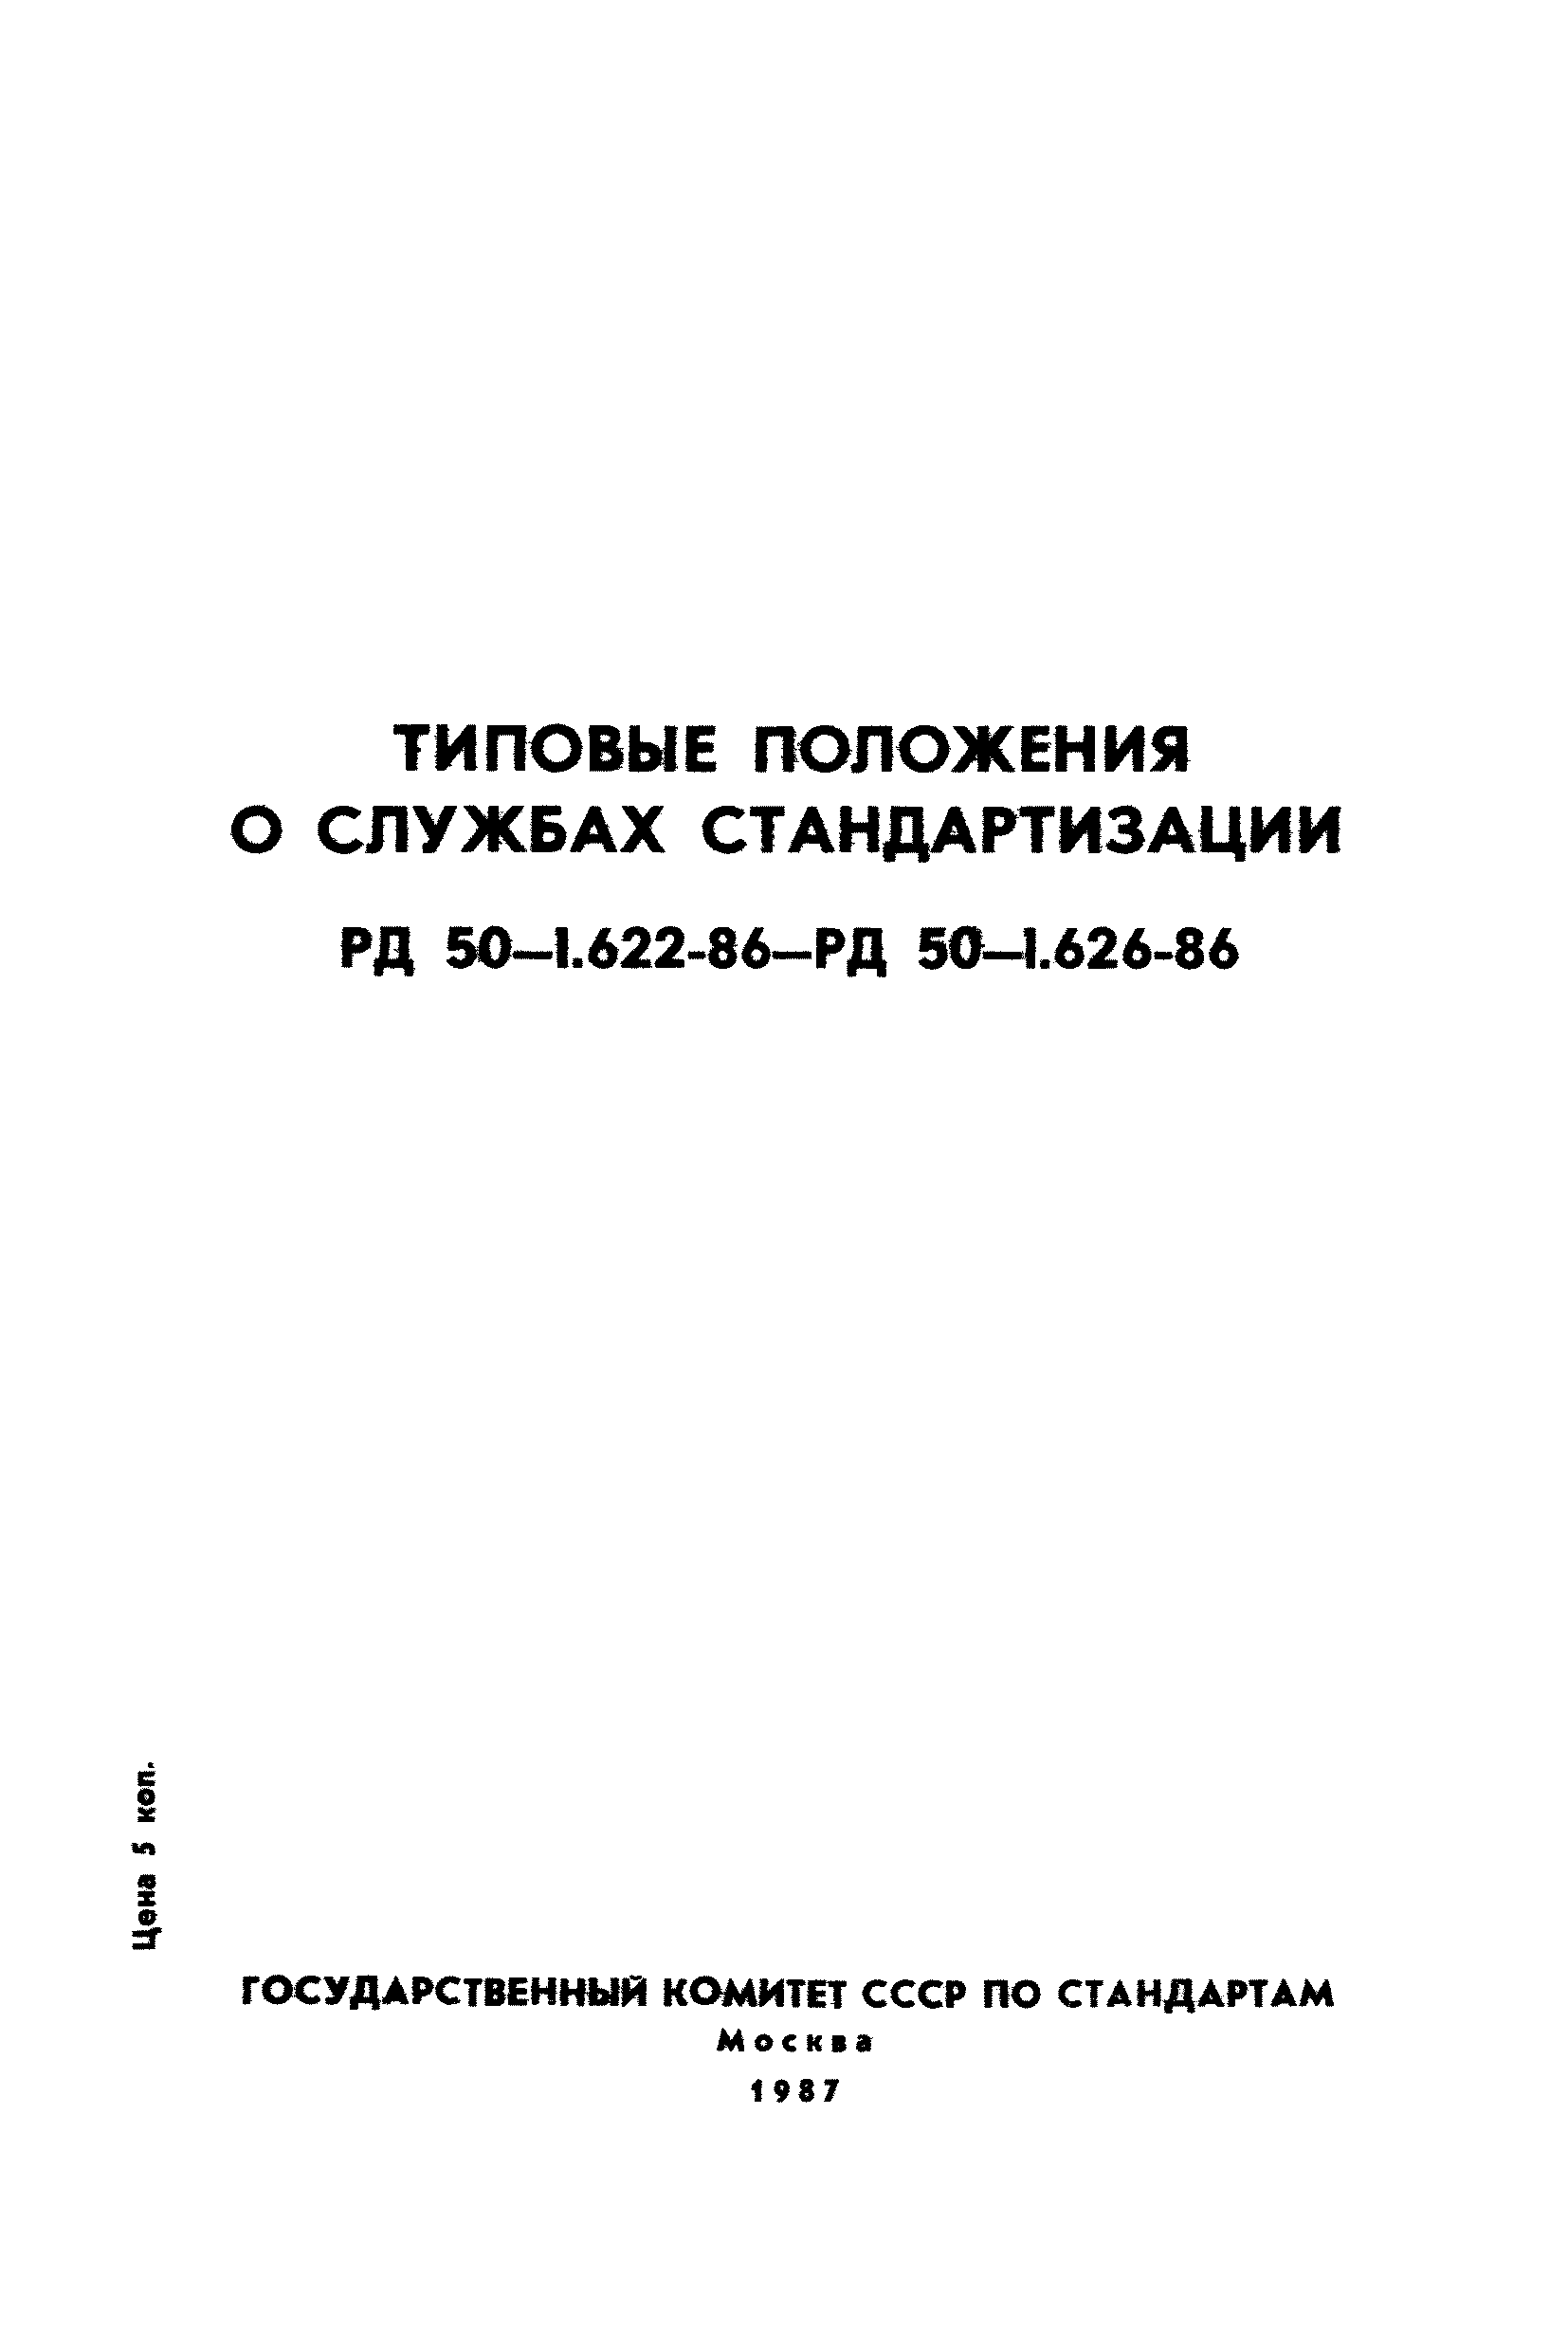 РД 50-1.624-86